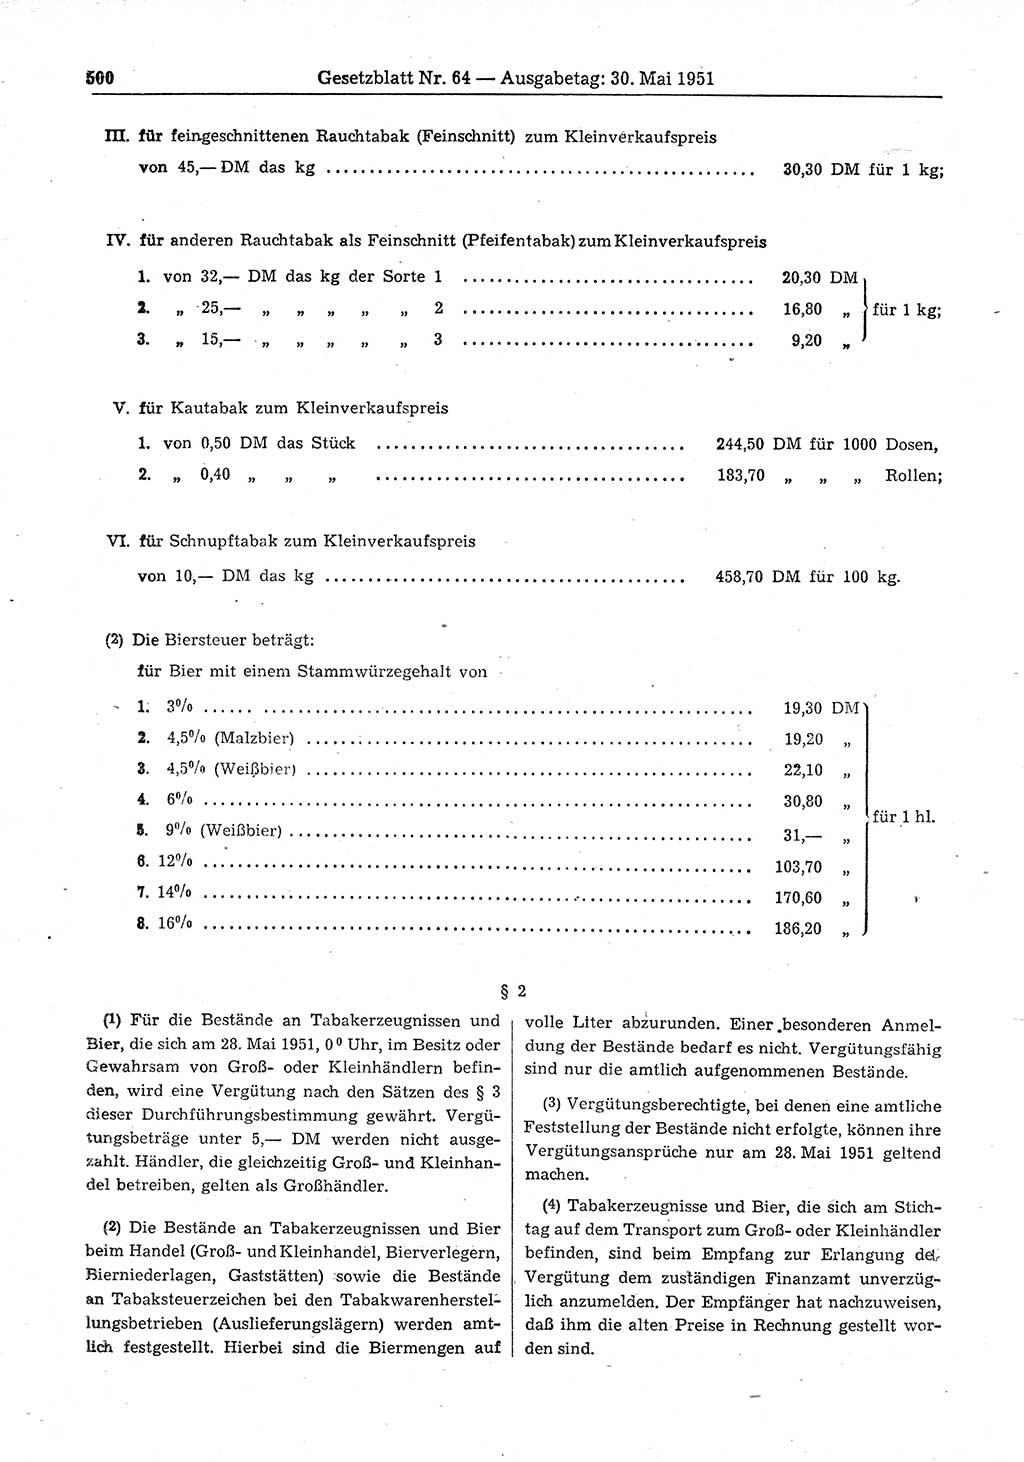 Gesetzblatt (GBl.) der Deutschen Demokratischen Republik (DDR) 1951, Seite 500 (GBl. DDR 1951, S. 500)